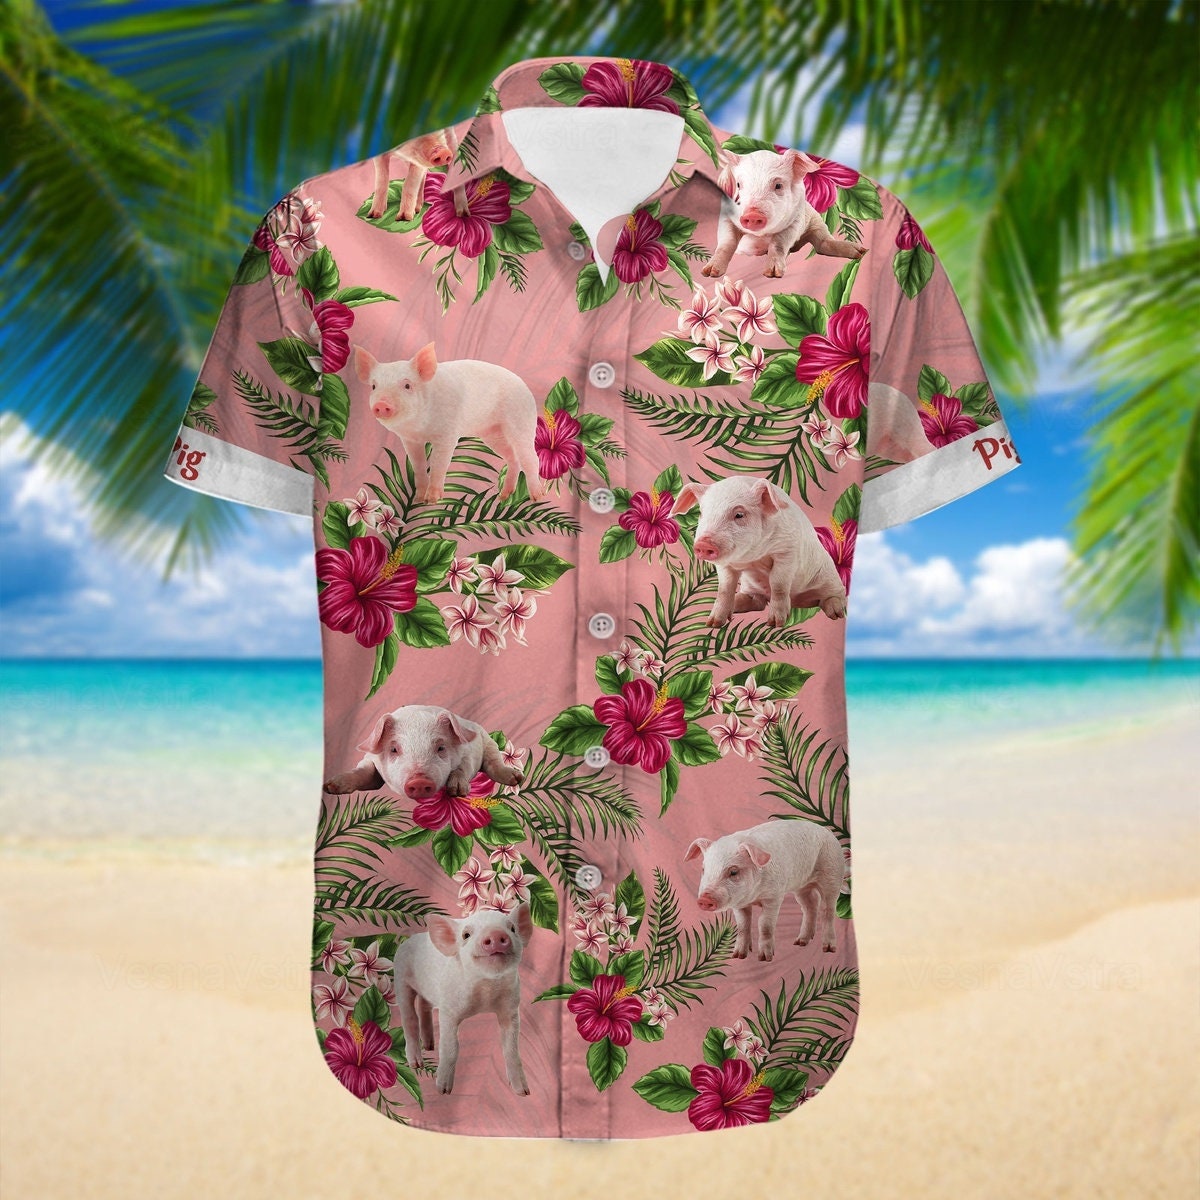 Pig Hawaii Shirt, Pig Shirt, Button Up Shirt, Pig Shirts For Women, Pig Lover Shirt, Pig Beach Shirt, Flower Pig Shirt, Farm Life Shirt